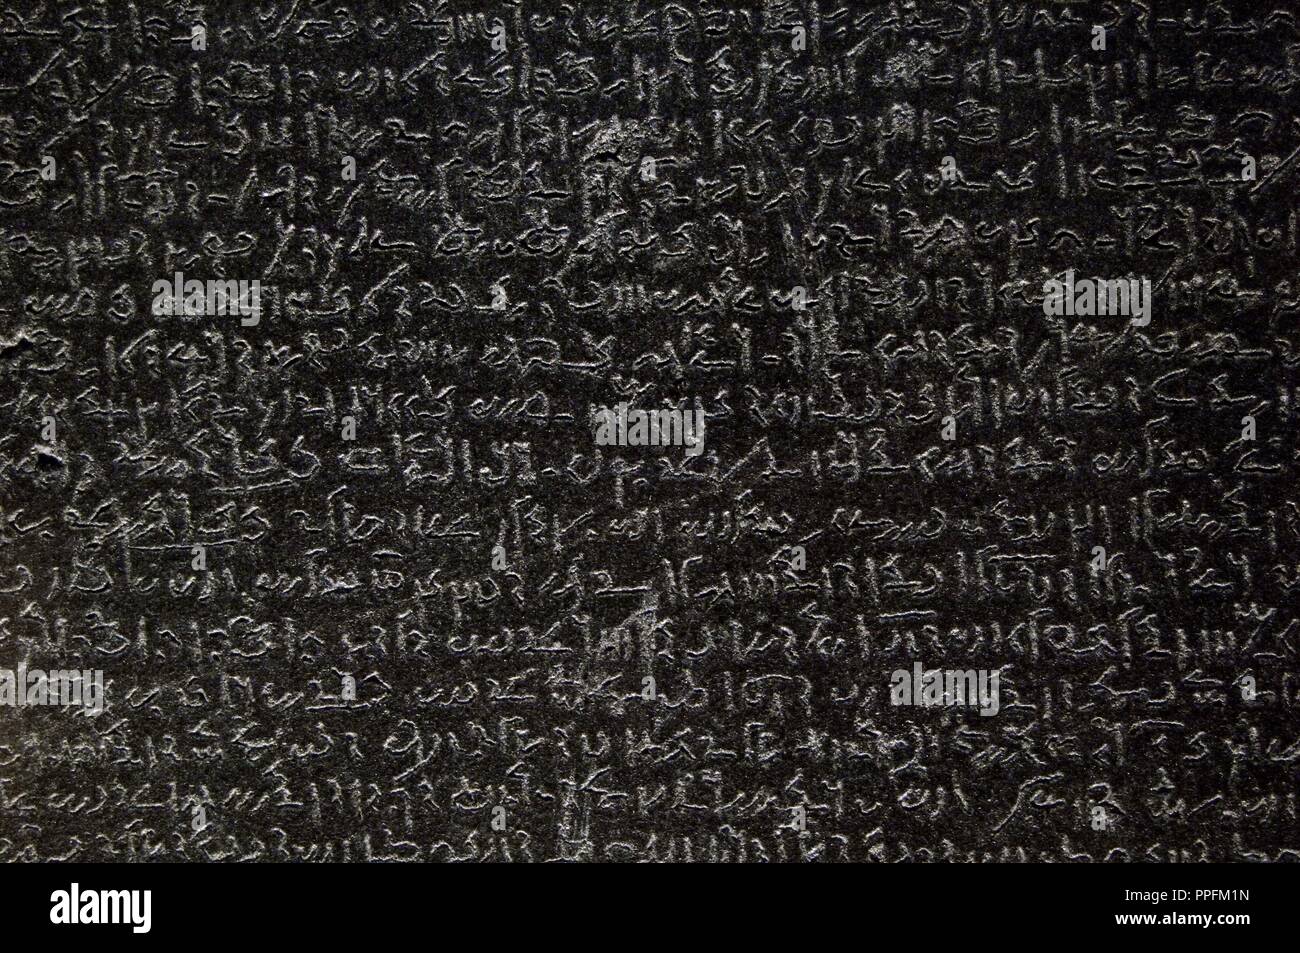 La Rosetta Stone. Frammento di un nero stele di granito con una iscrizione in diverse lingue   di un decreto di Tolomeo V Epiphanes re. Epoca tolemaica. 196 BC. Dettaglio. Demotic scrittura. British Museum. Londra. Regno Unito. Foto Stock